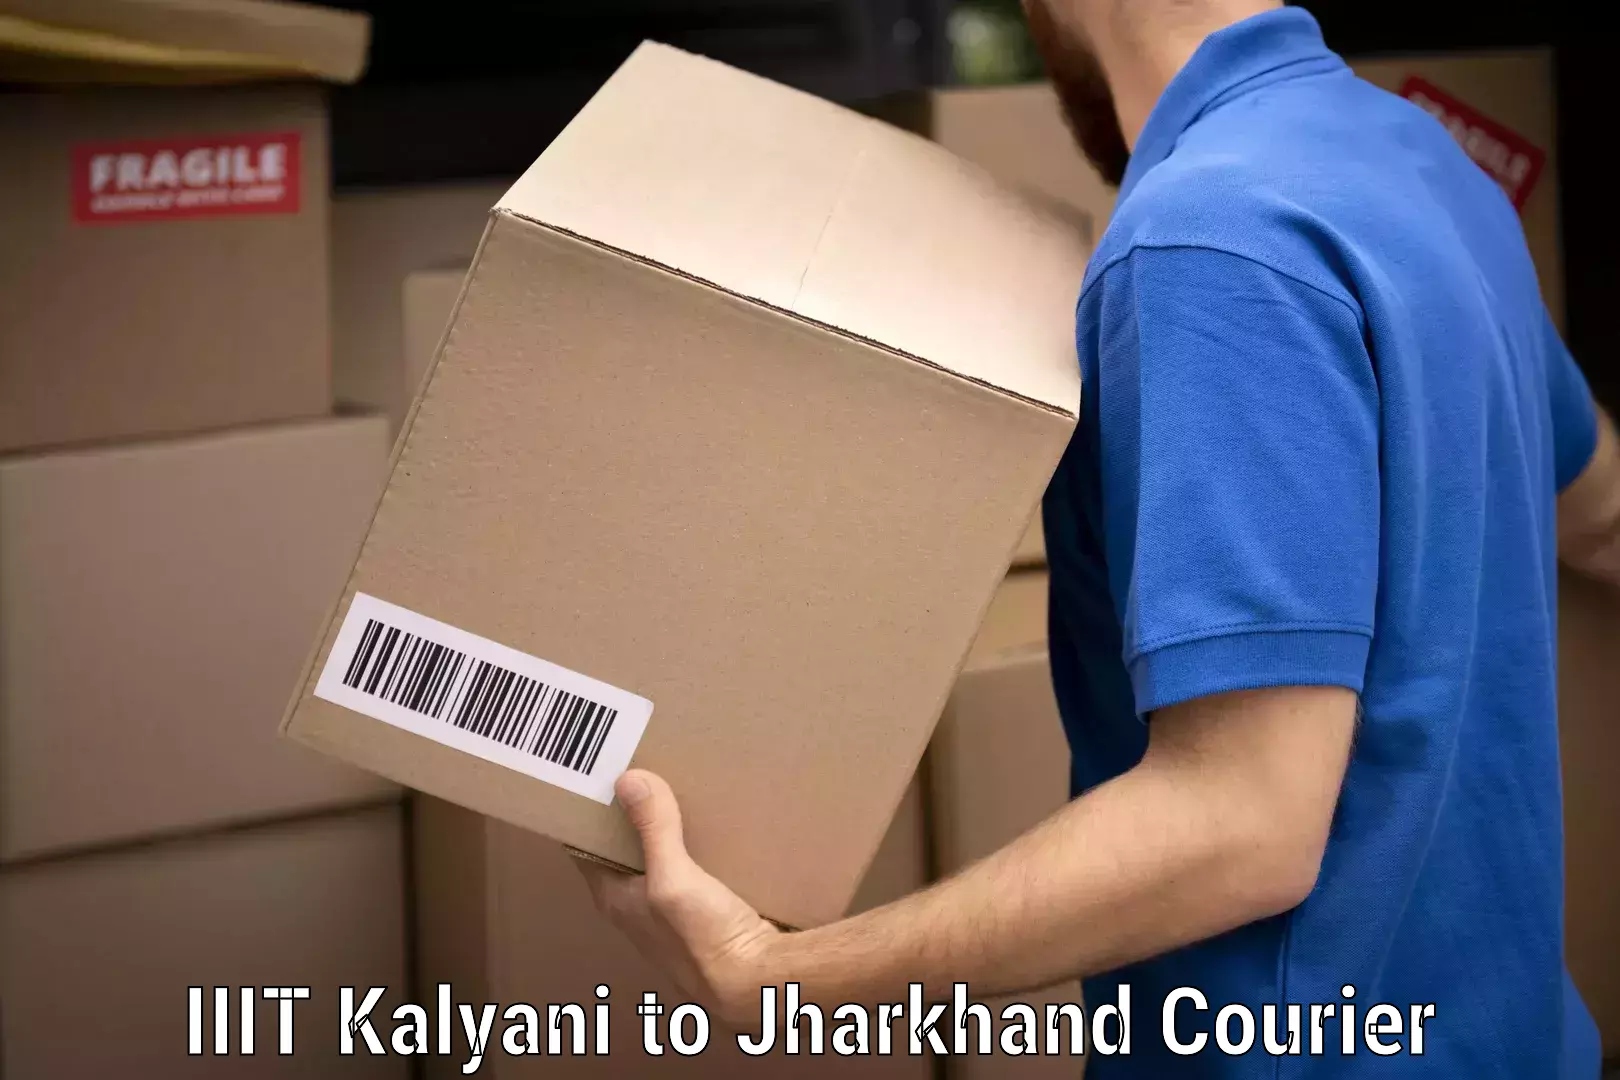 Professional movers IIIT Kalyani to Jharkhand